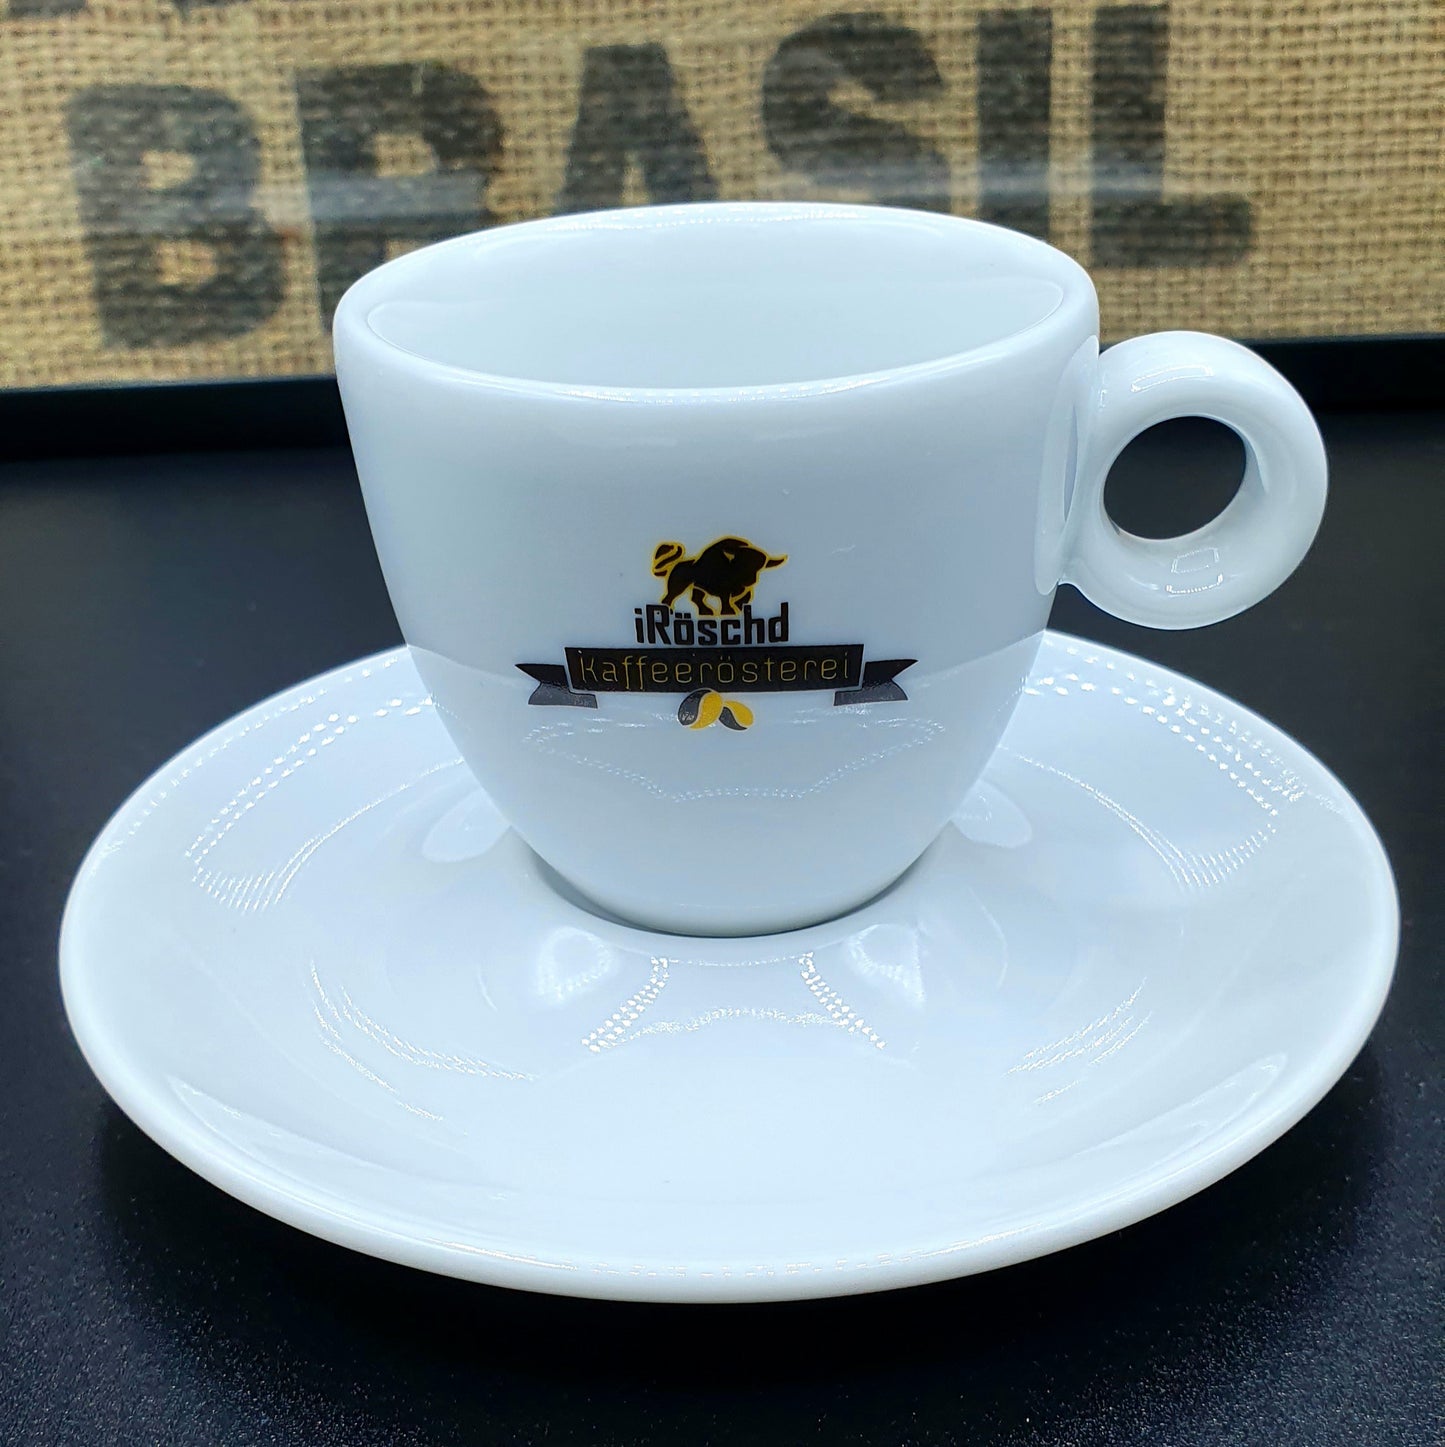 Hochwertige Porzellantasse von iRöschd. Geeignet als Espresso Tasse. Espresso Tasse mit dem Siegel von iRöschd. Die schlichte Untertasse ist enthaltn.